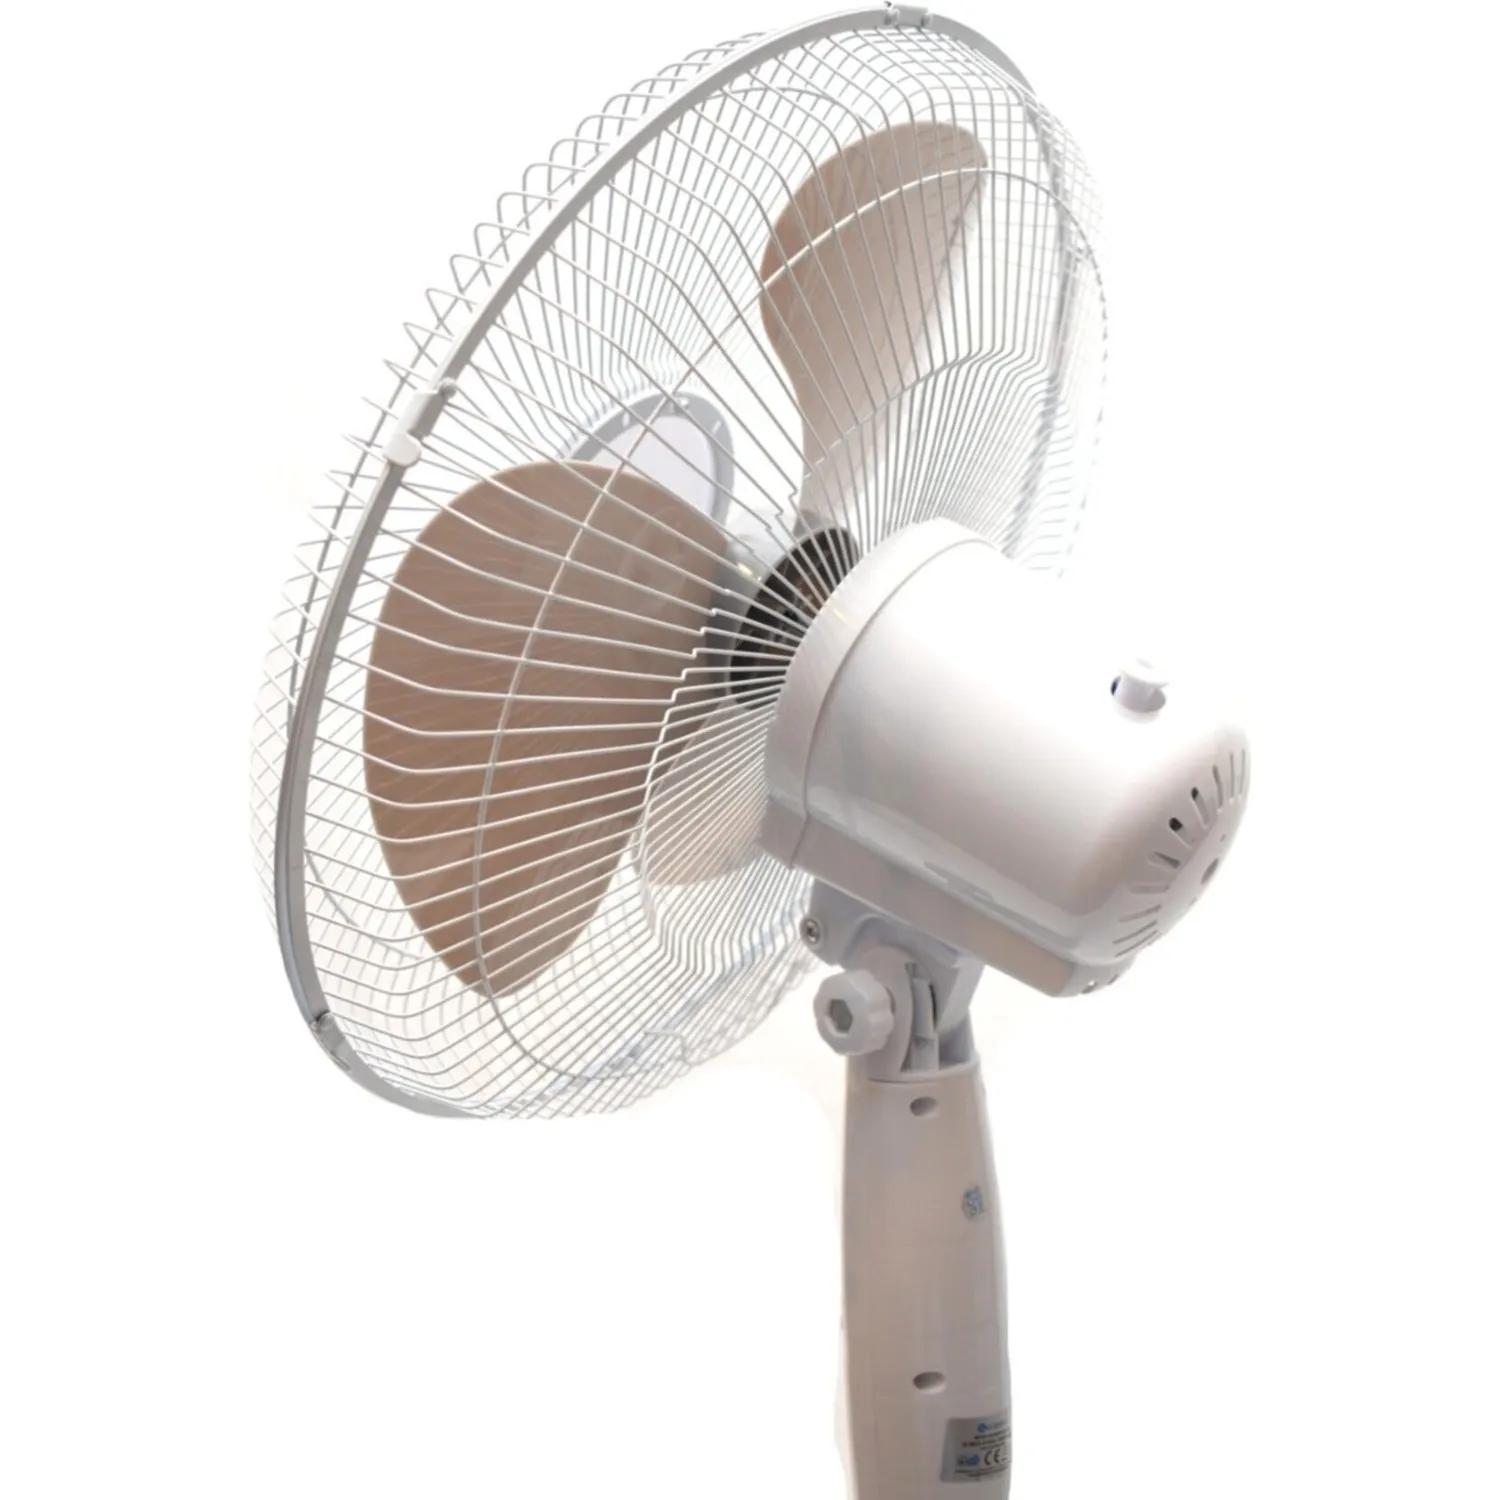 

RUBENİS Rba-07 Elite Pedestal Fan Cooling Fan Electric Wind Fan